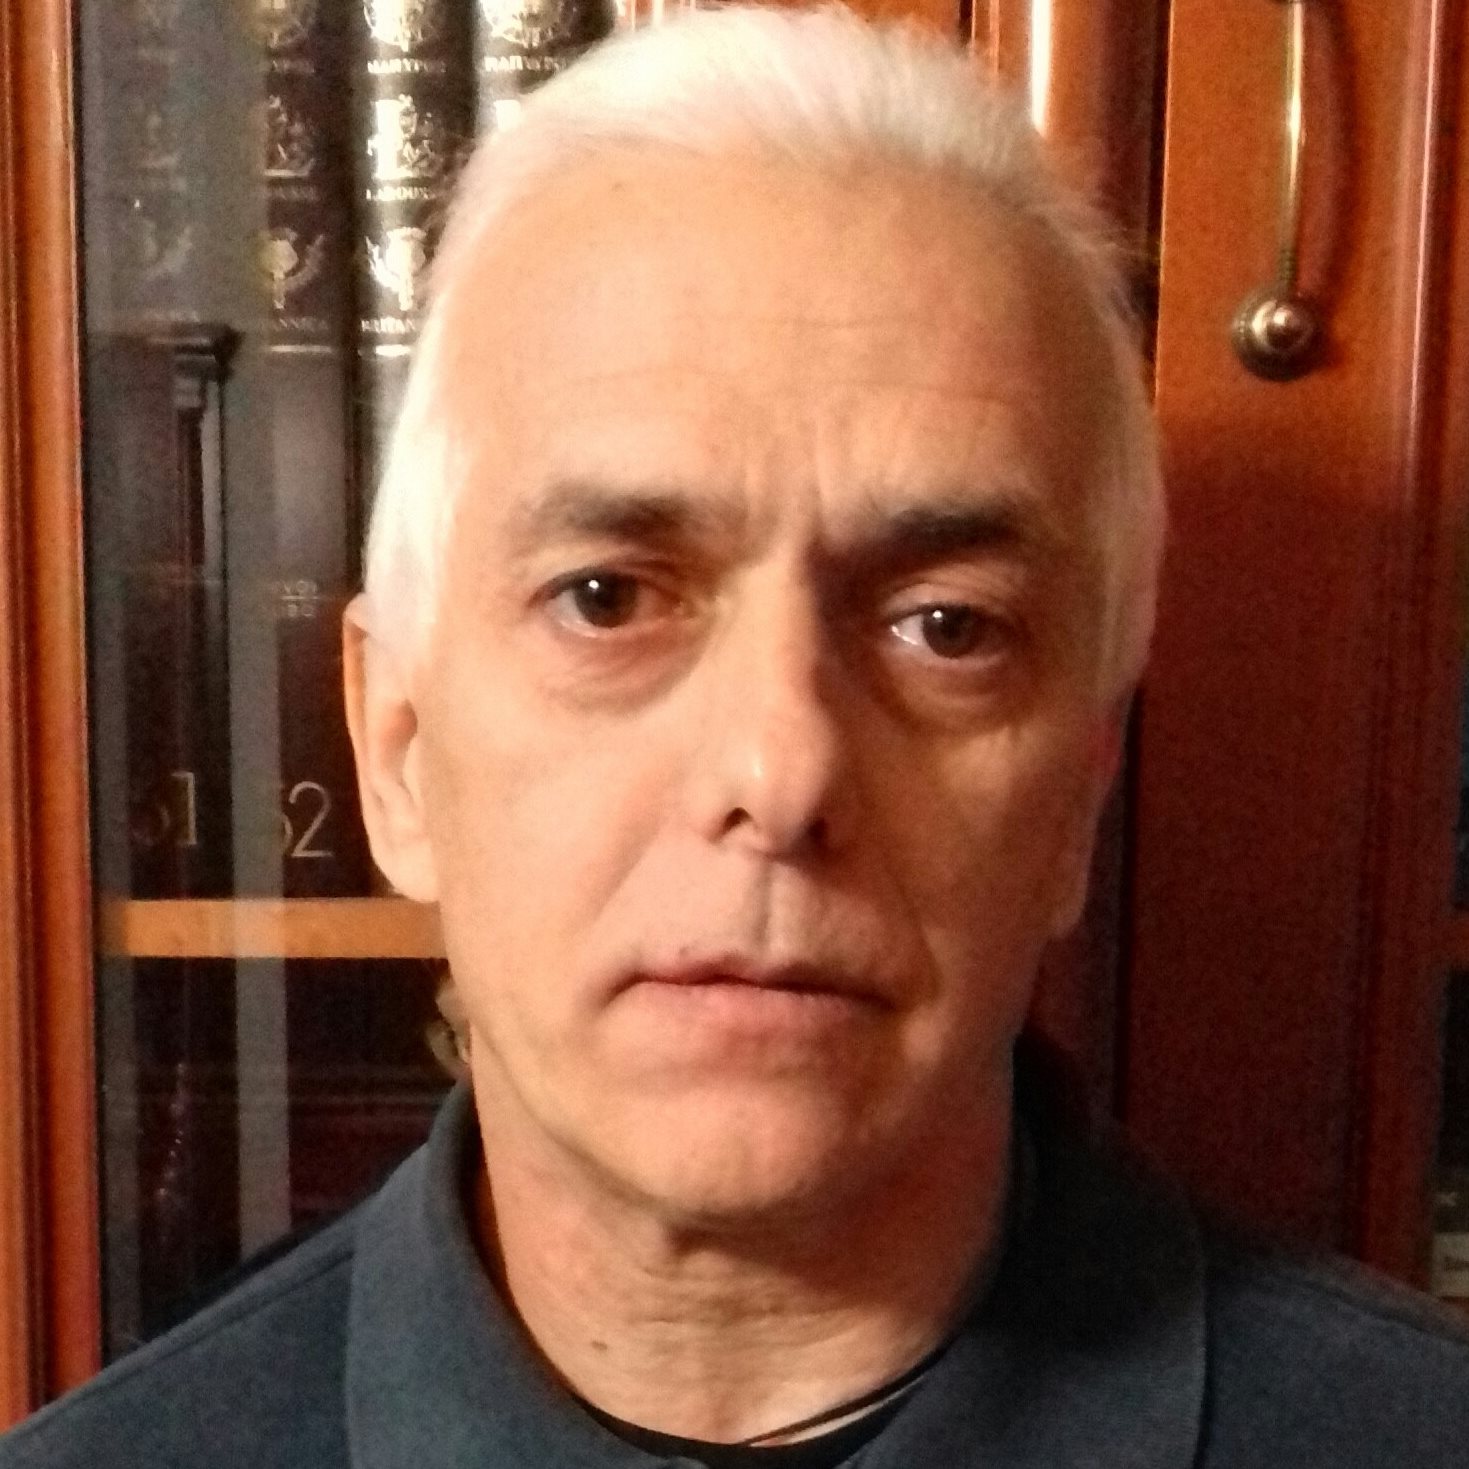 Ο Γιάννης Μαραγκός εκπροσώπησε το Επιμελητήριο Εύβοιας σε εκδήλωση του Θεάτρου Χαλκίδας